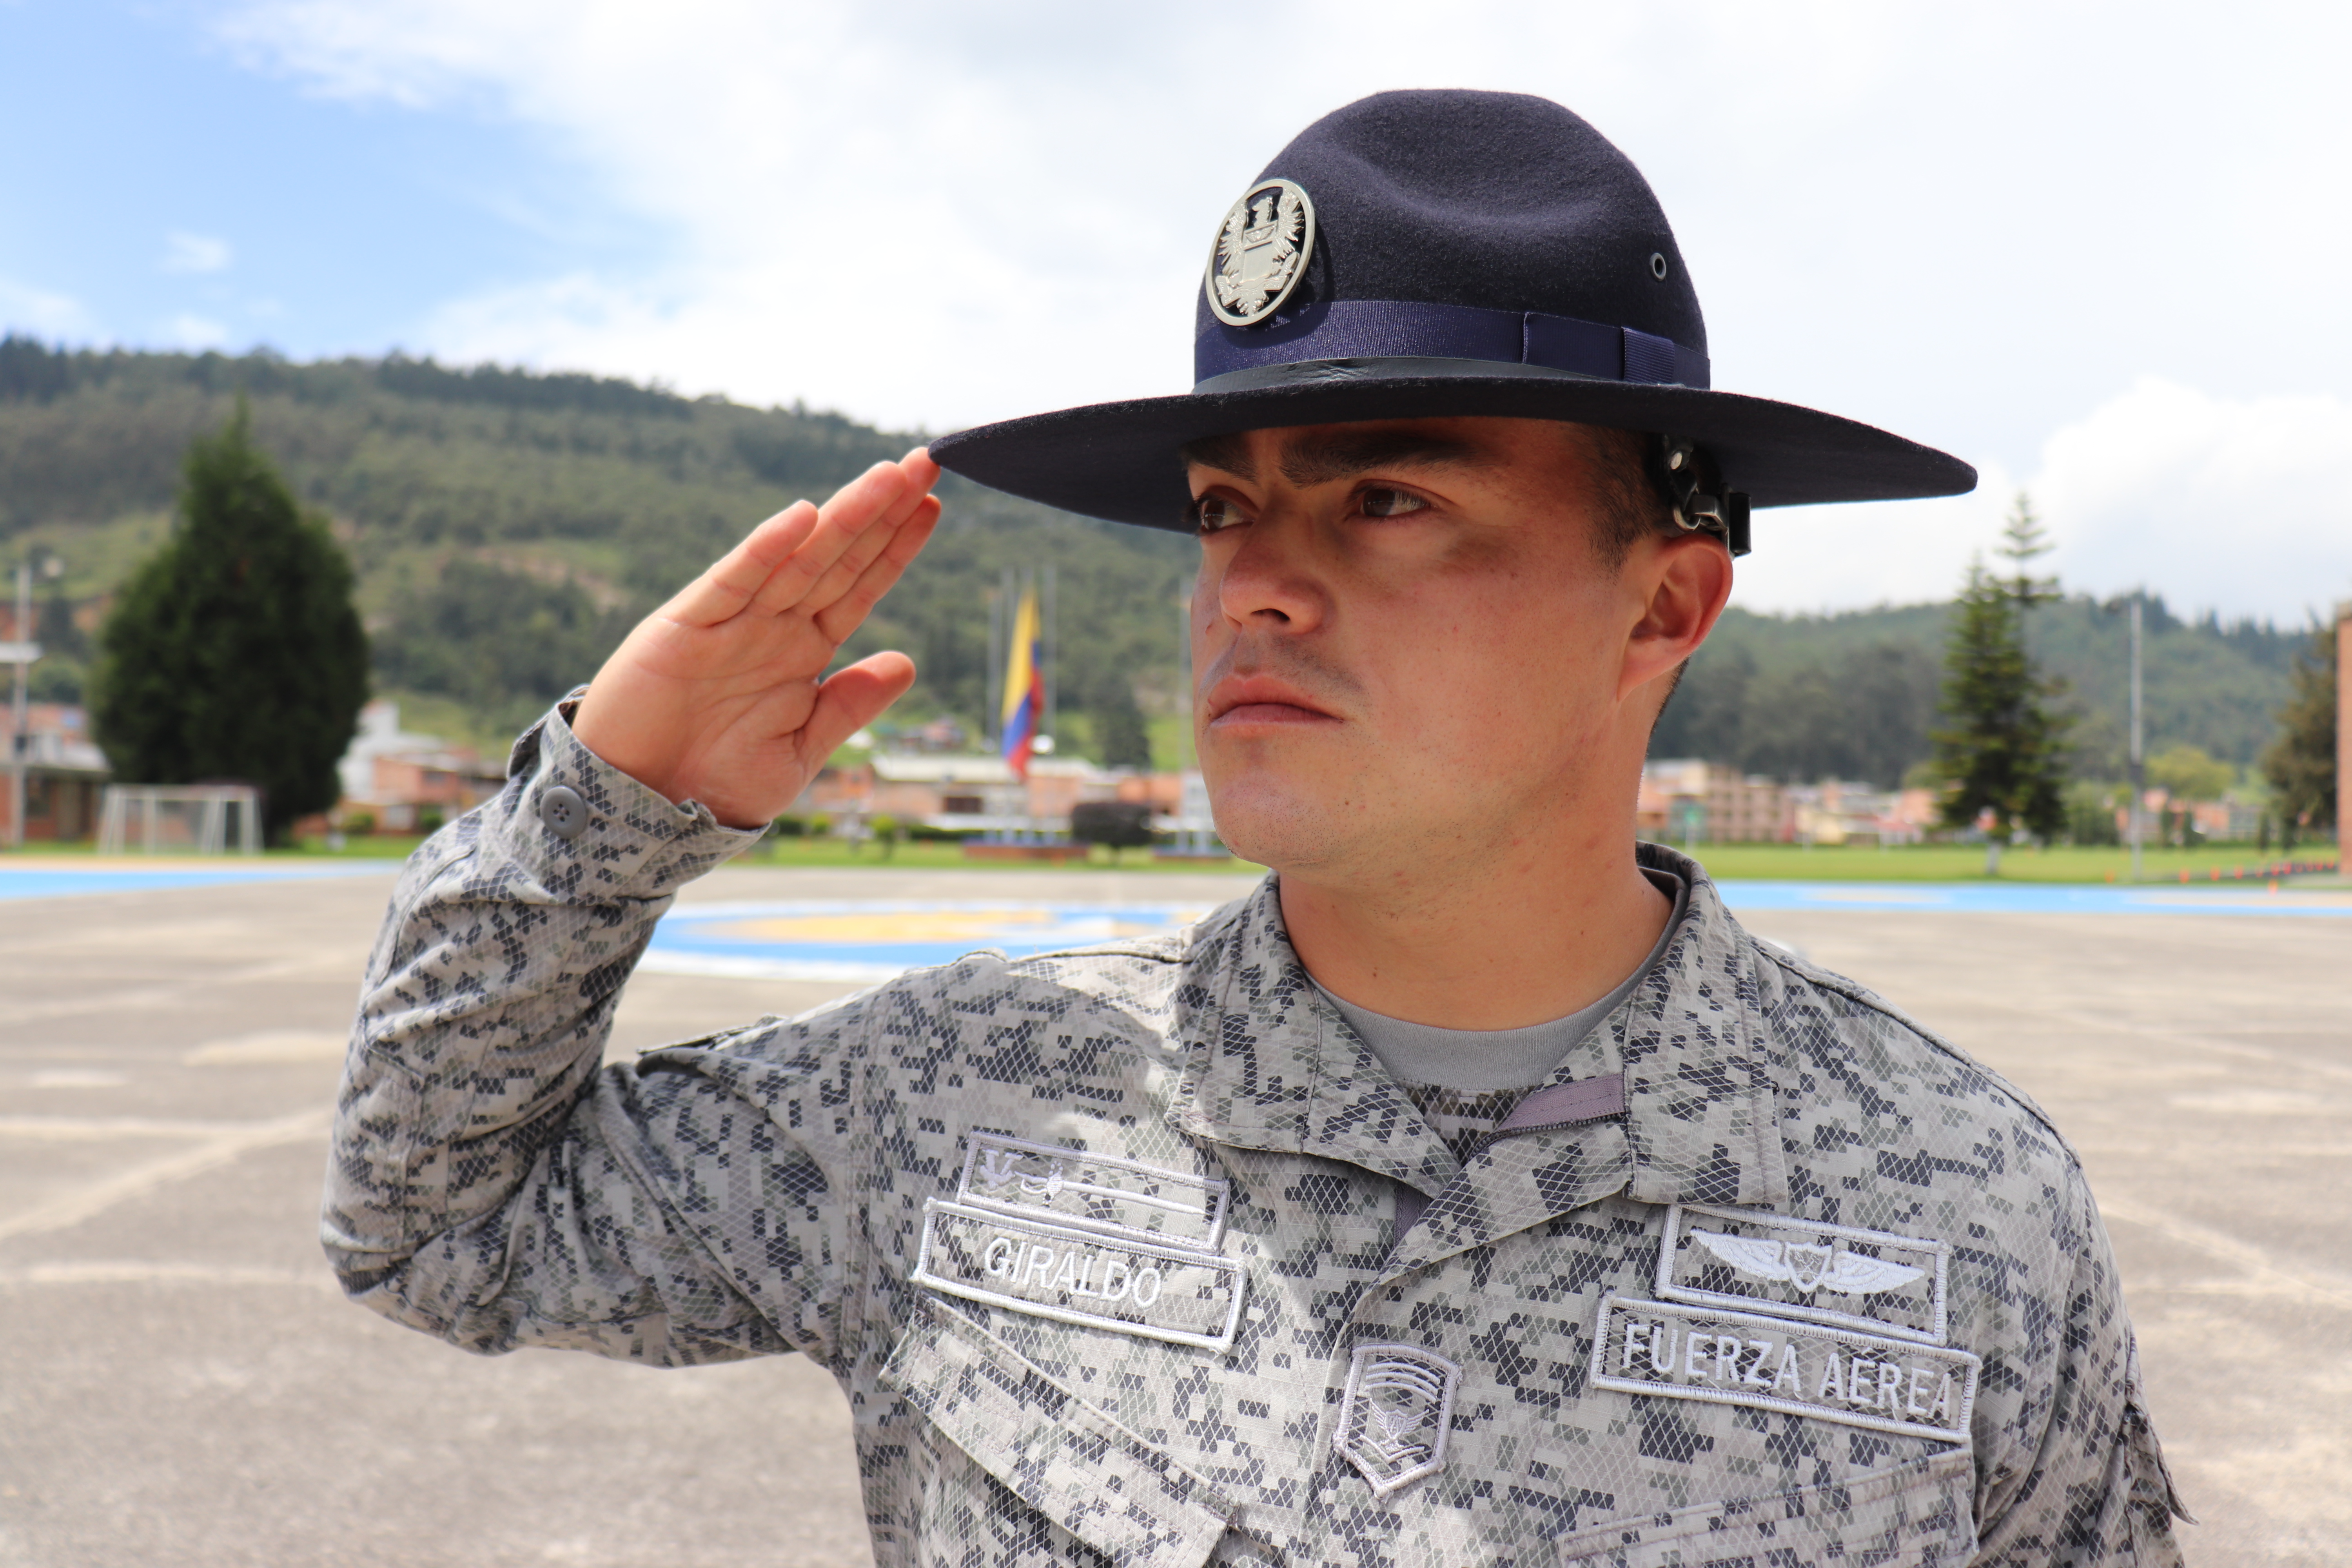 Oficiales y Suboficiales de la Fuerza Aérea se capacitan como Drill Instructor en la ESUFA